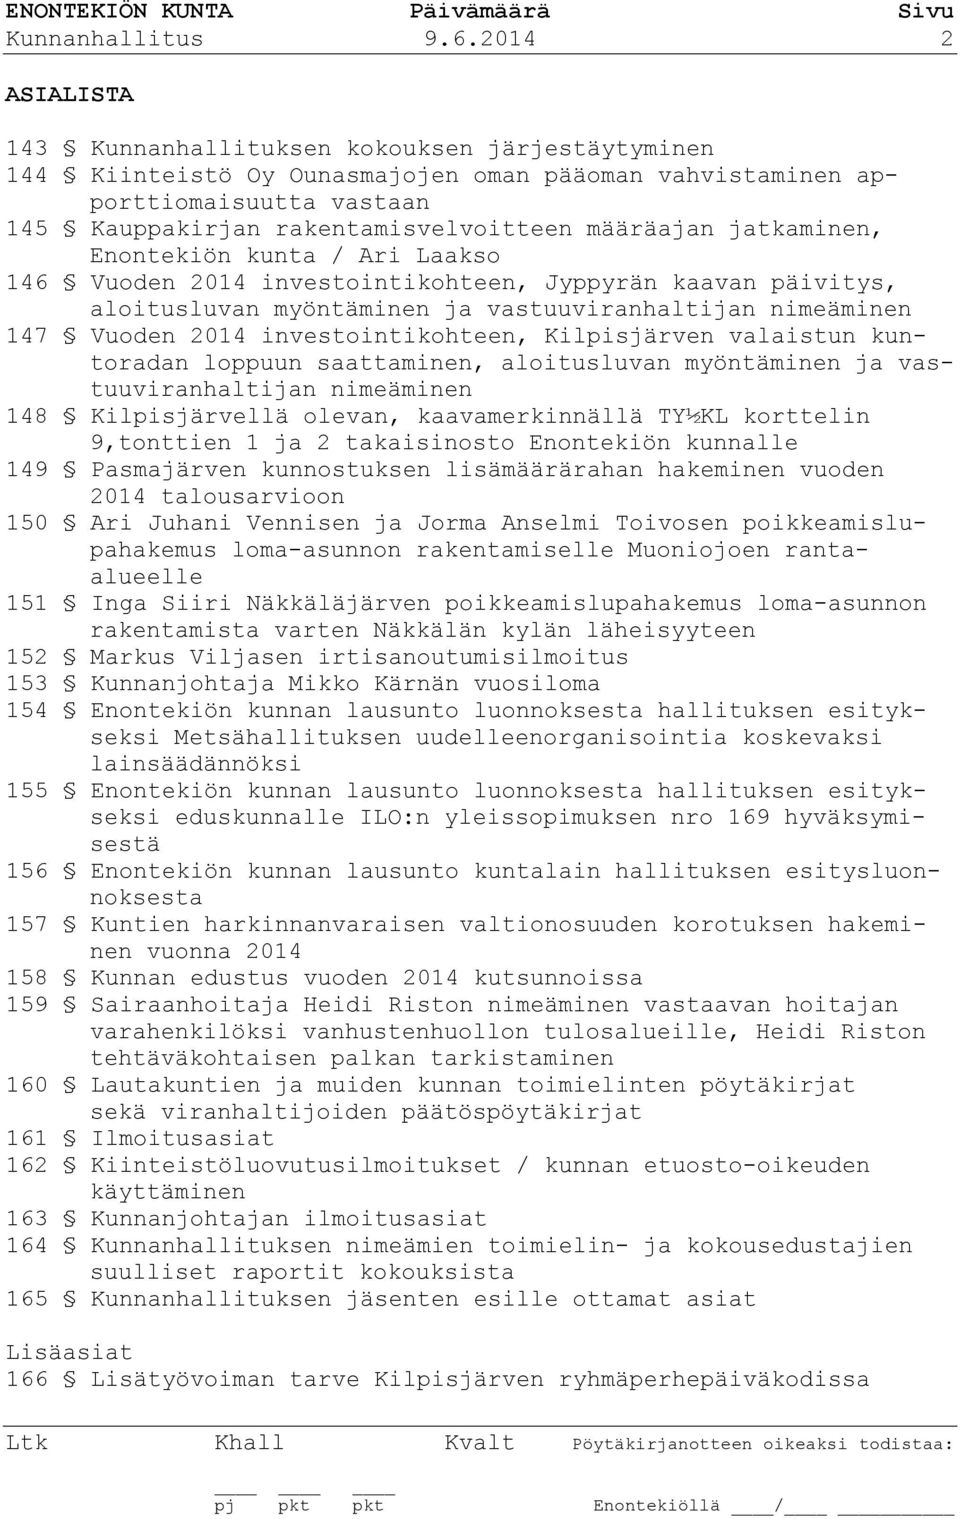 jatkaminen, Enontekiön kunta / Ari Laakso 146 Vuoden 2014 investointikohteen, Jyppyrän kaavan päivitys, aloitusluvan myöntäminen ja vastuuviranhaltijan nimeäminen 147 Vuoden 2014 investointikohteen,